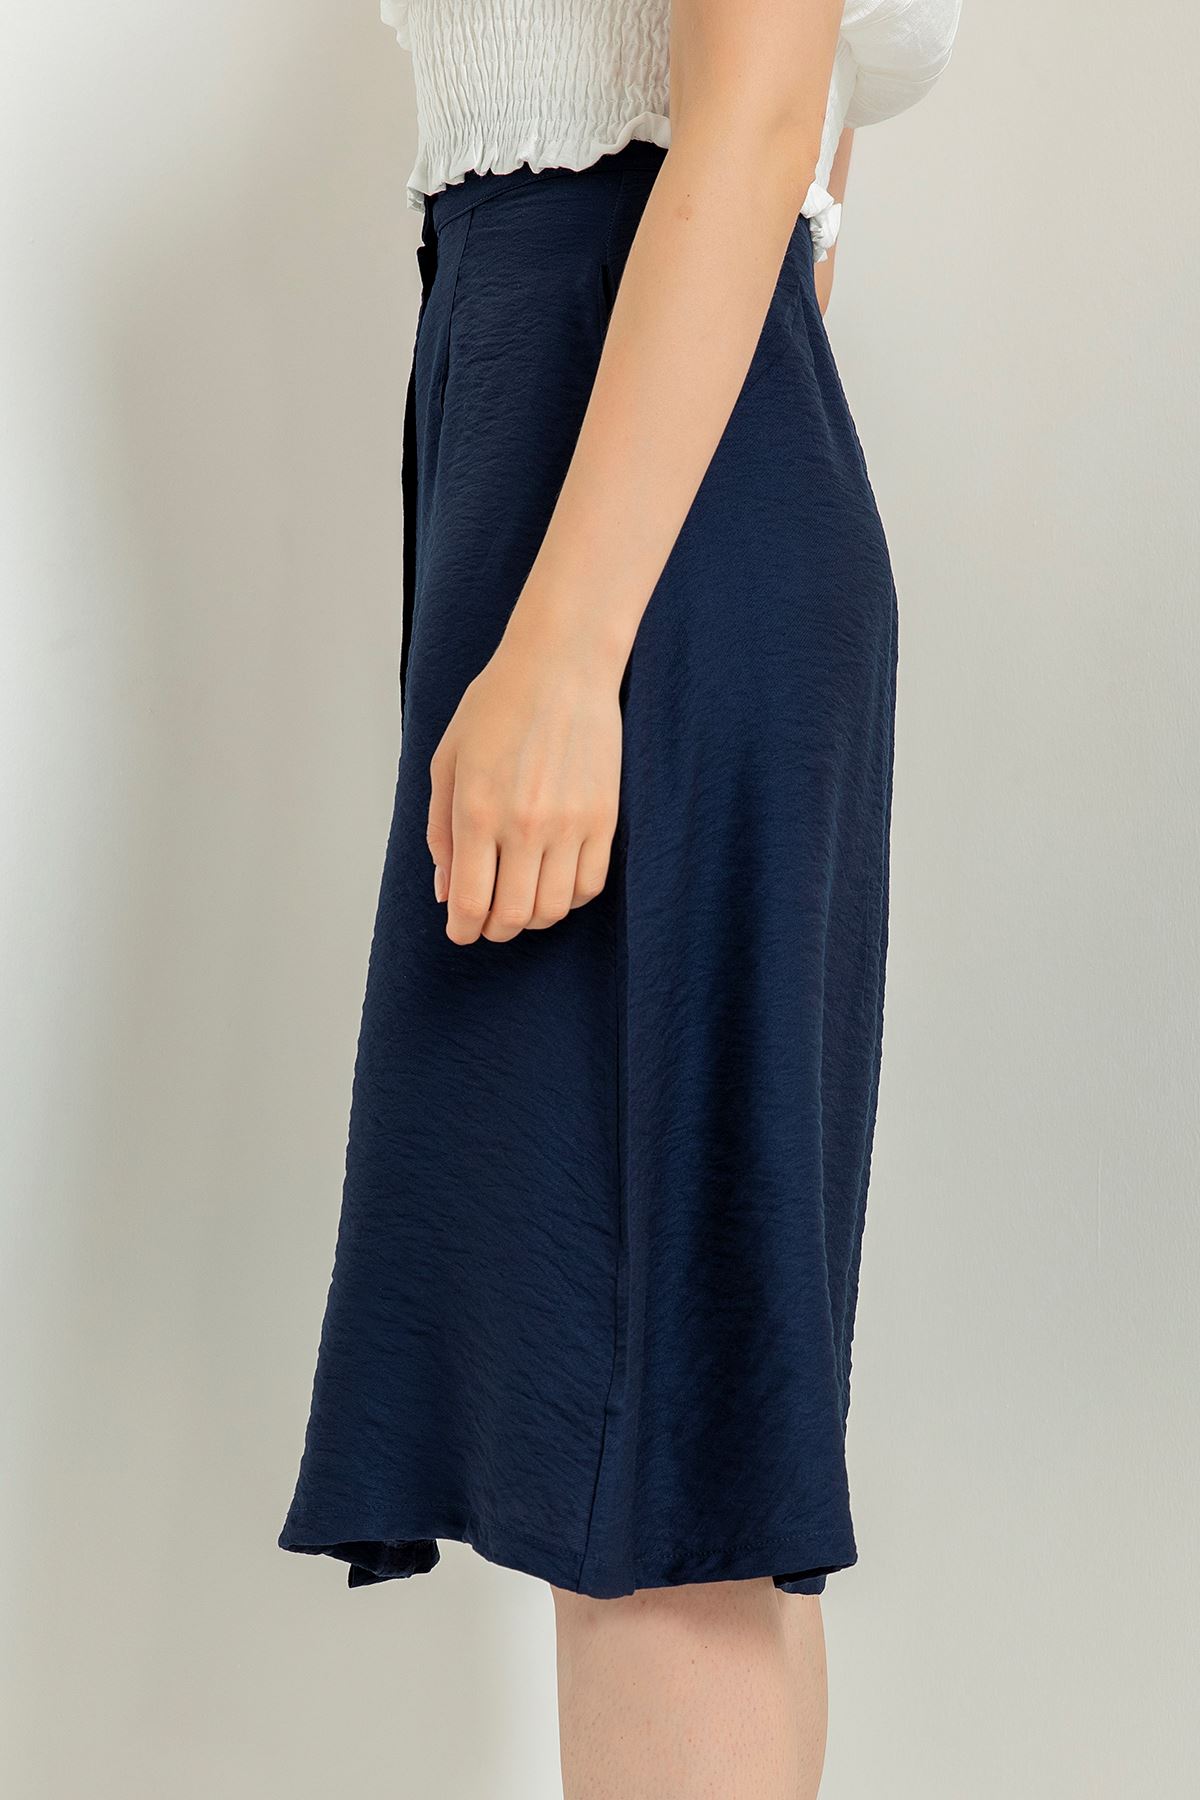 Aerobin Fabric Below Knee Straight Button Women'S Skirt - Navy Blue 